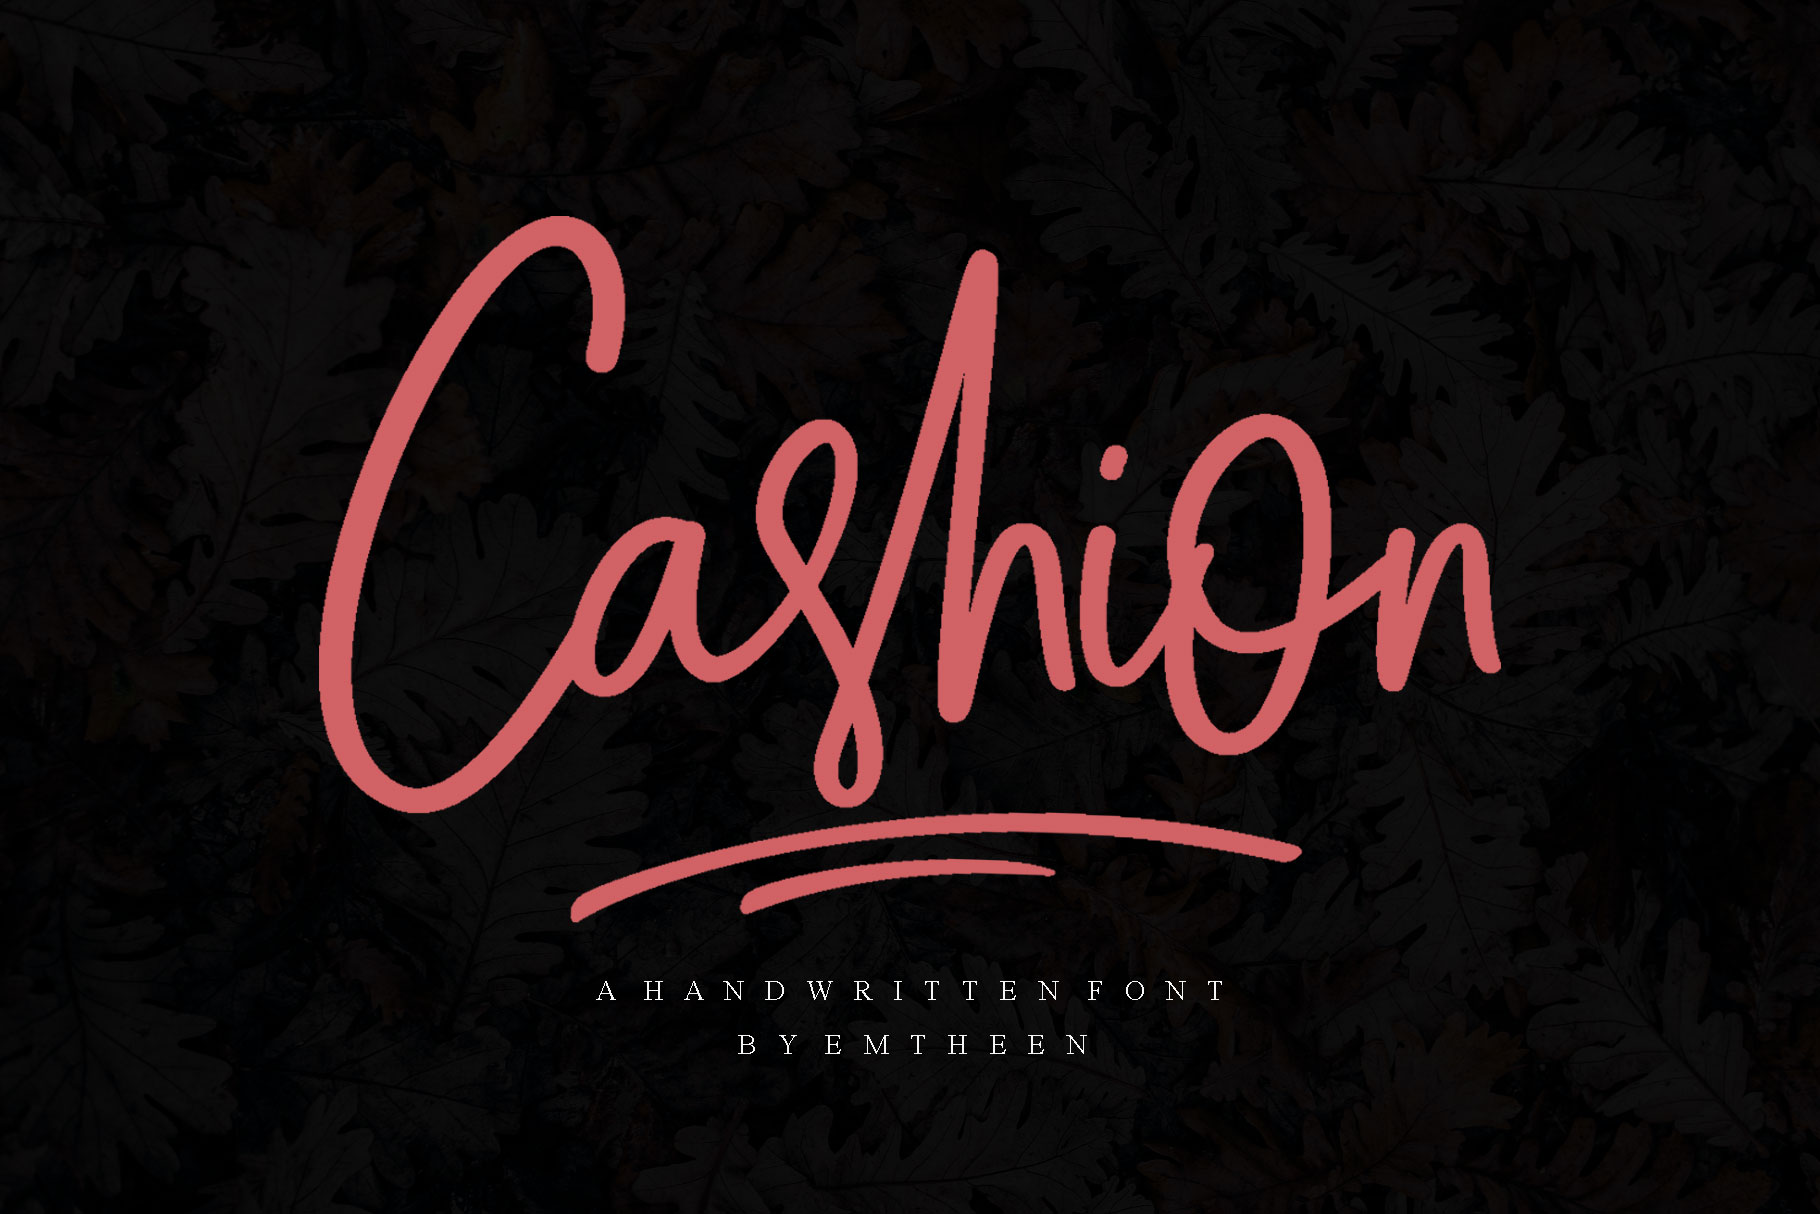 Cashion Font